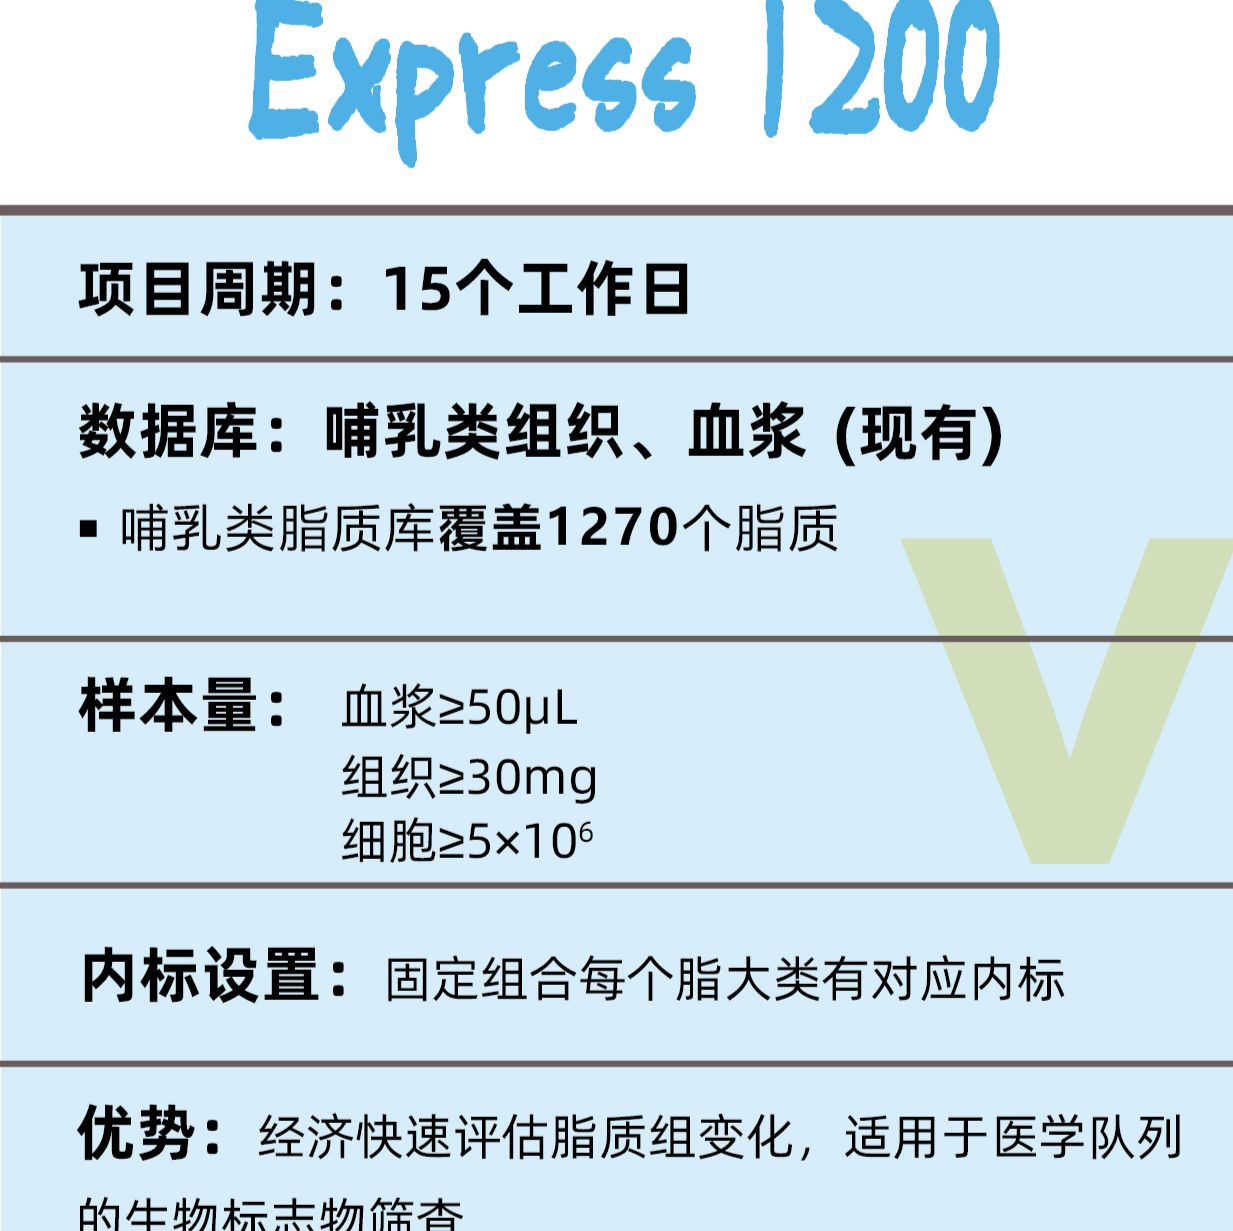 脂质组学Express 1200